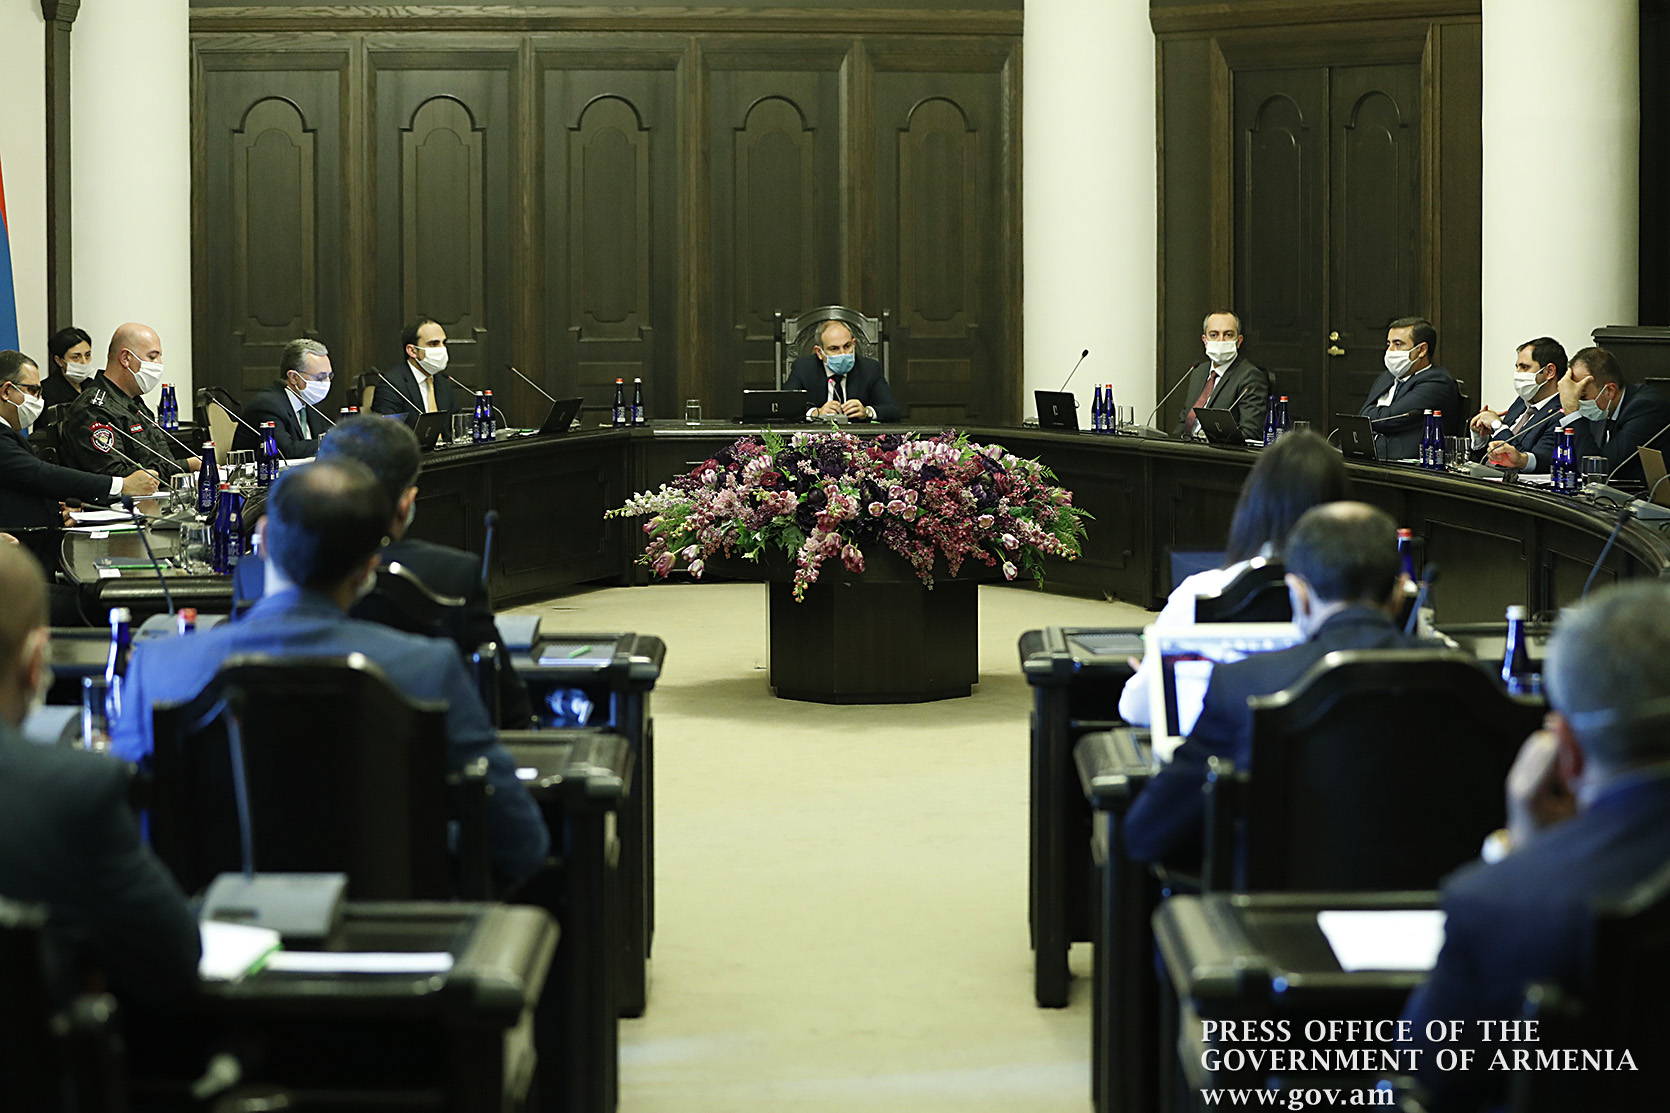 Կորոնավիրուսի հետ զուգահեռ ապրելու համար առաջնահերթ պետք է դրսևորել անհատական բարձր պատասխանատվություն. վարչապետ